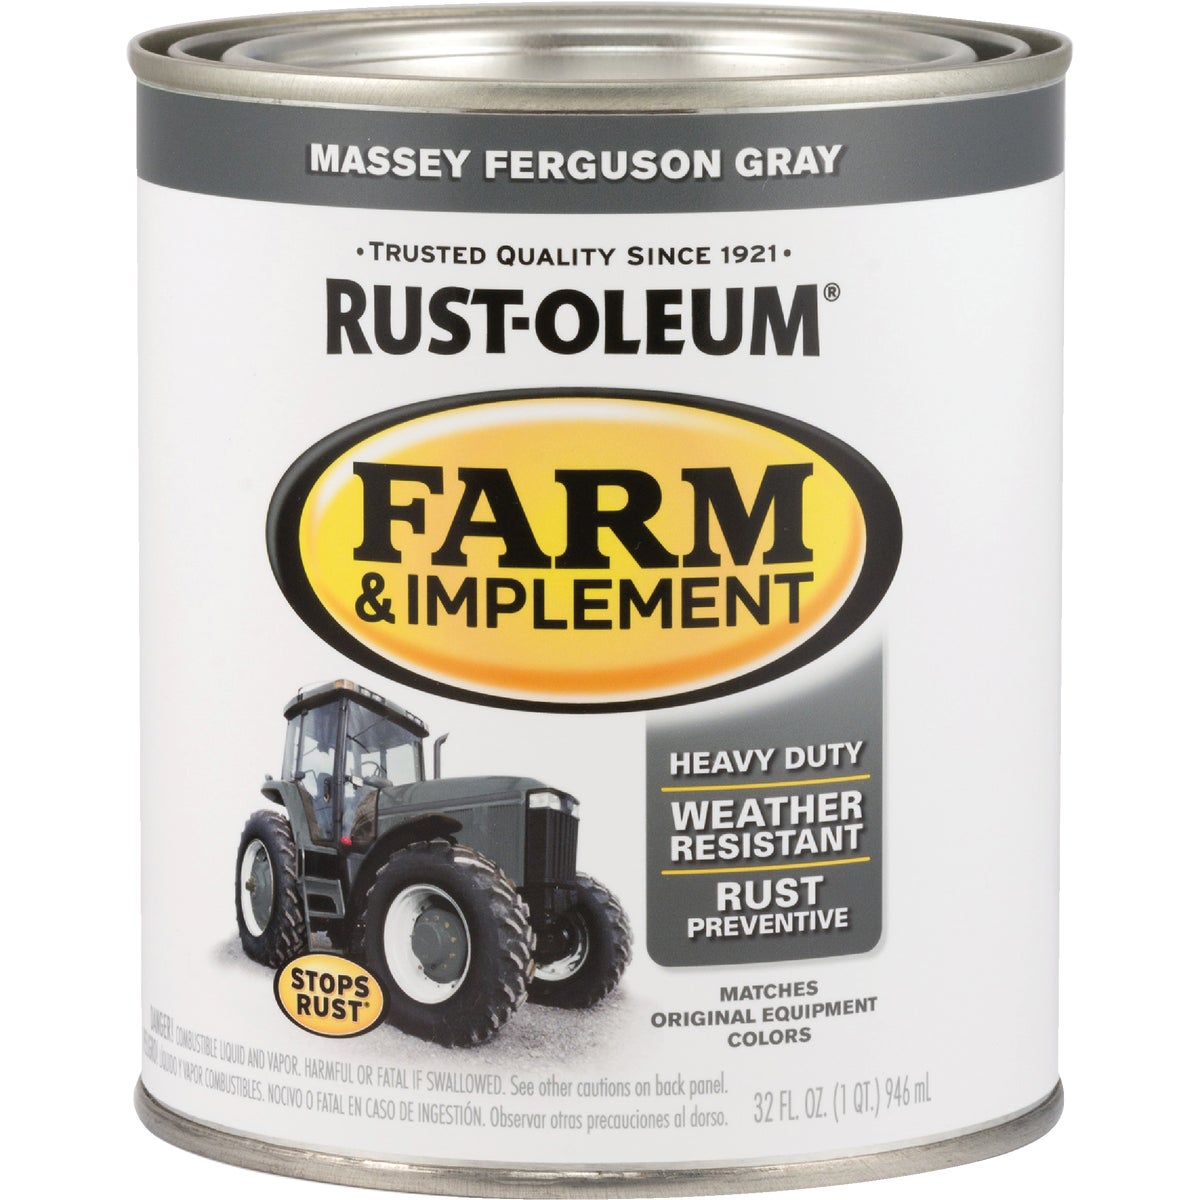 Rust-Oleum 1 Quart Massey Ferguson Gray Gloss Farm & Implement Enamel